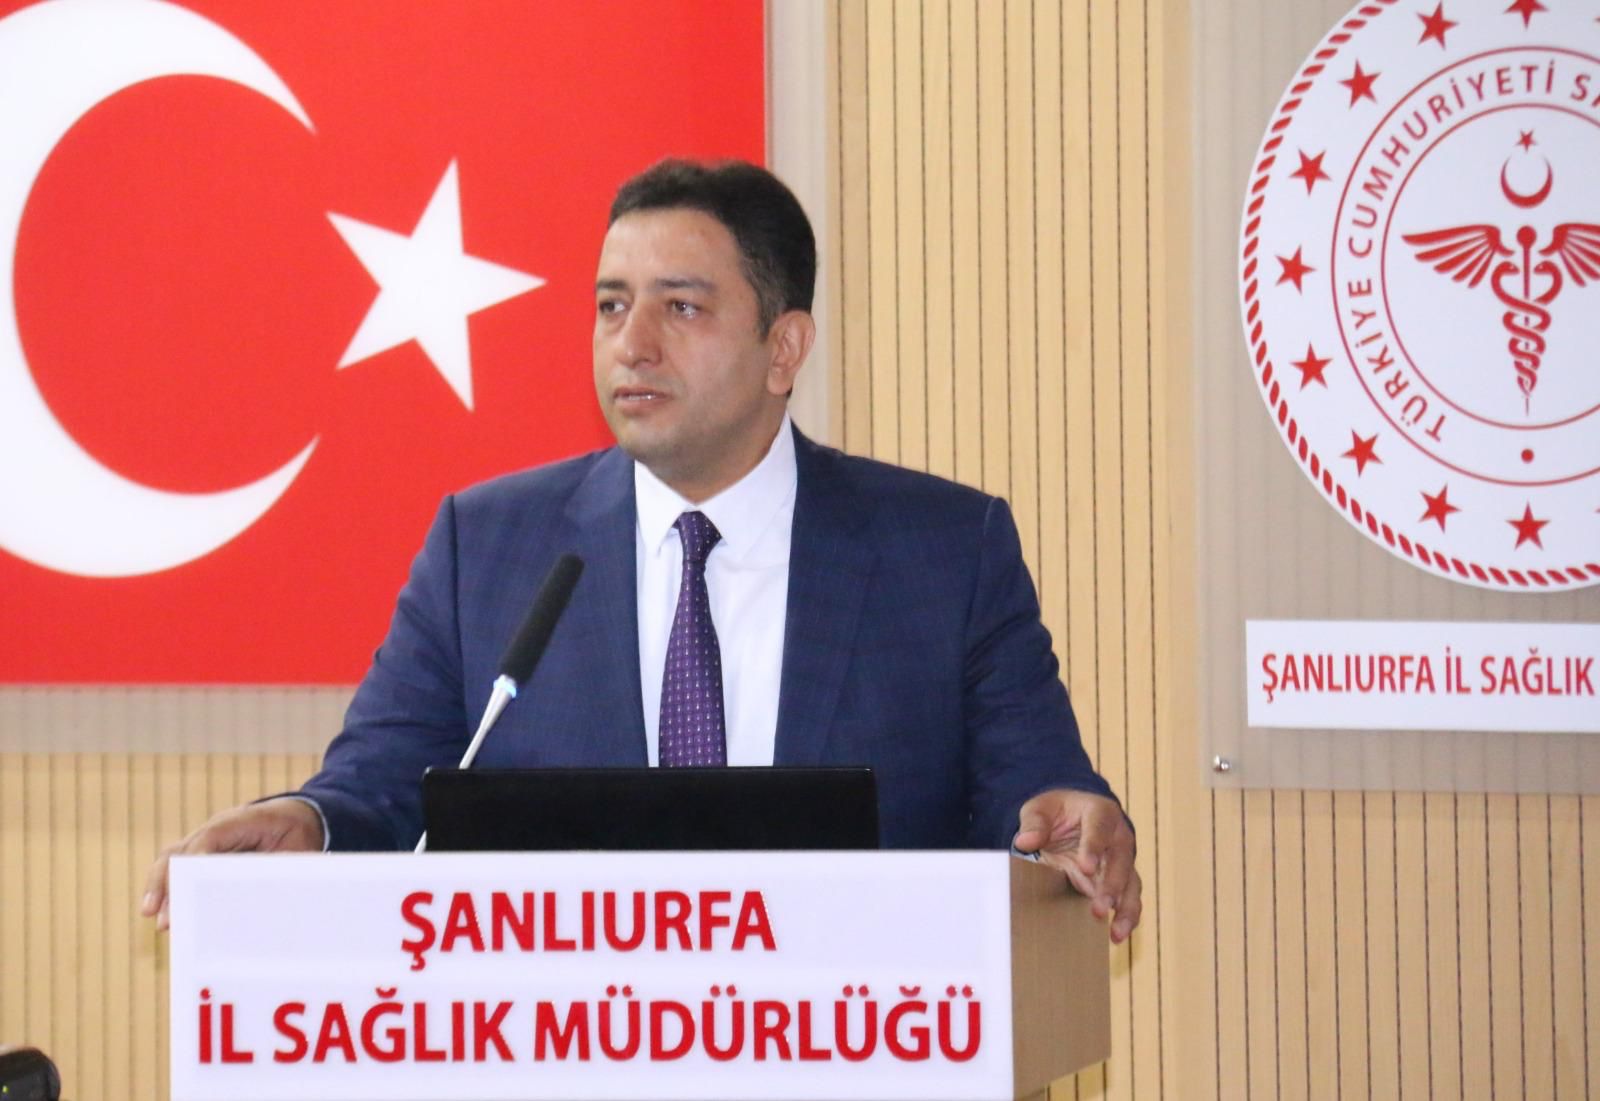 Şanlıurfa İl Sağlık Müdürü Dr. Abdullah Solmaz, Tema’mız  “Sağlıkla Yaşayan Türkiye”